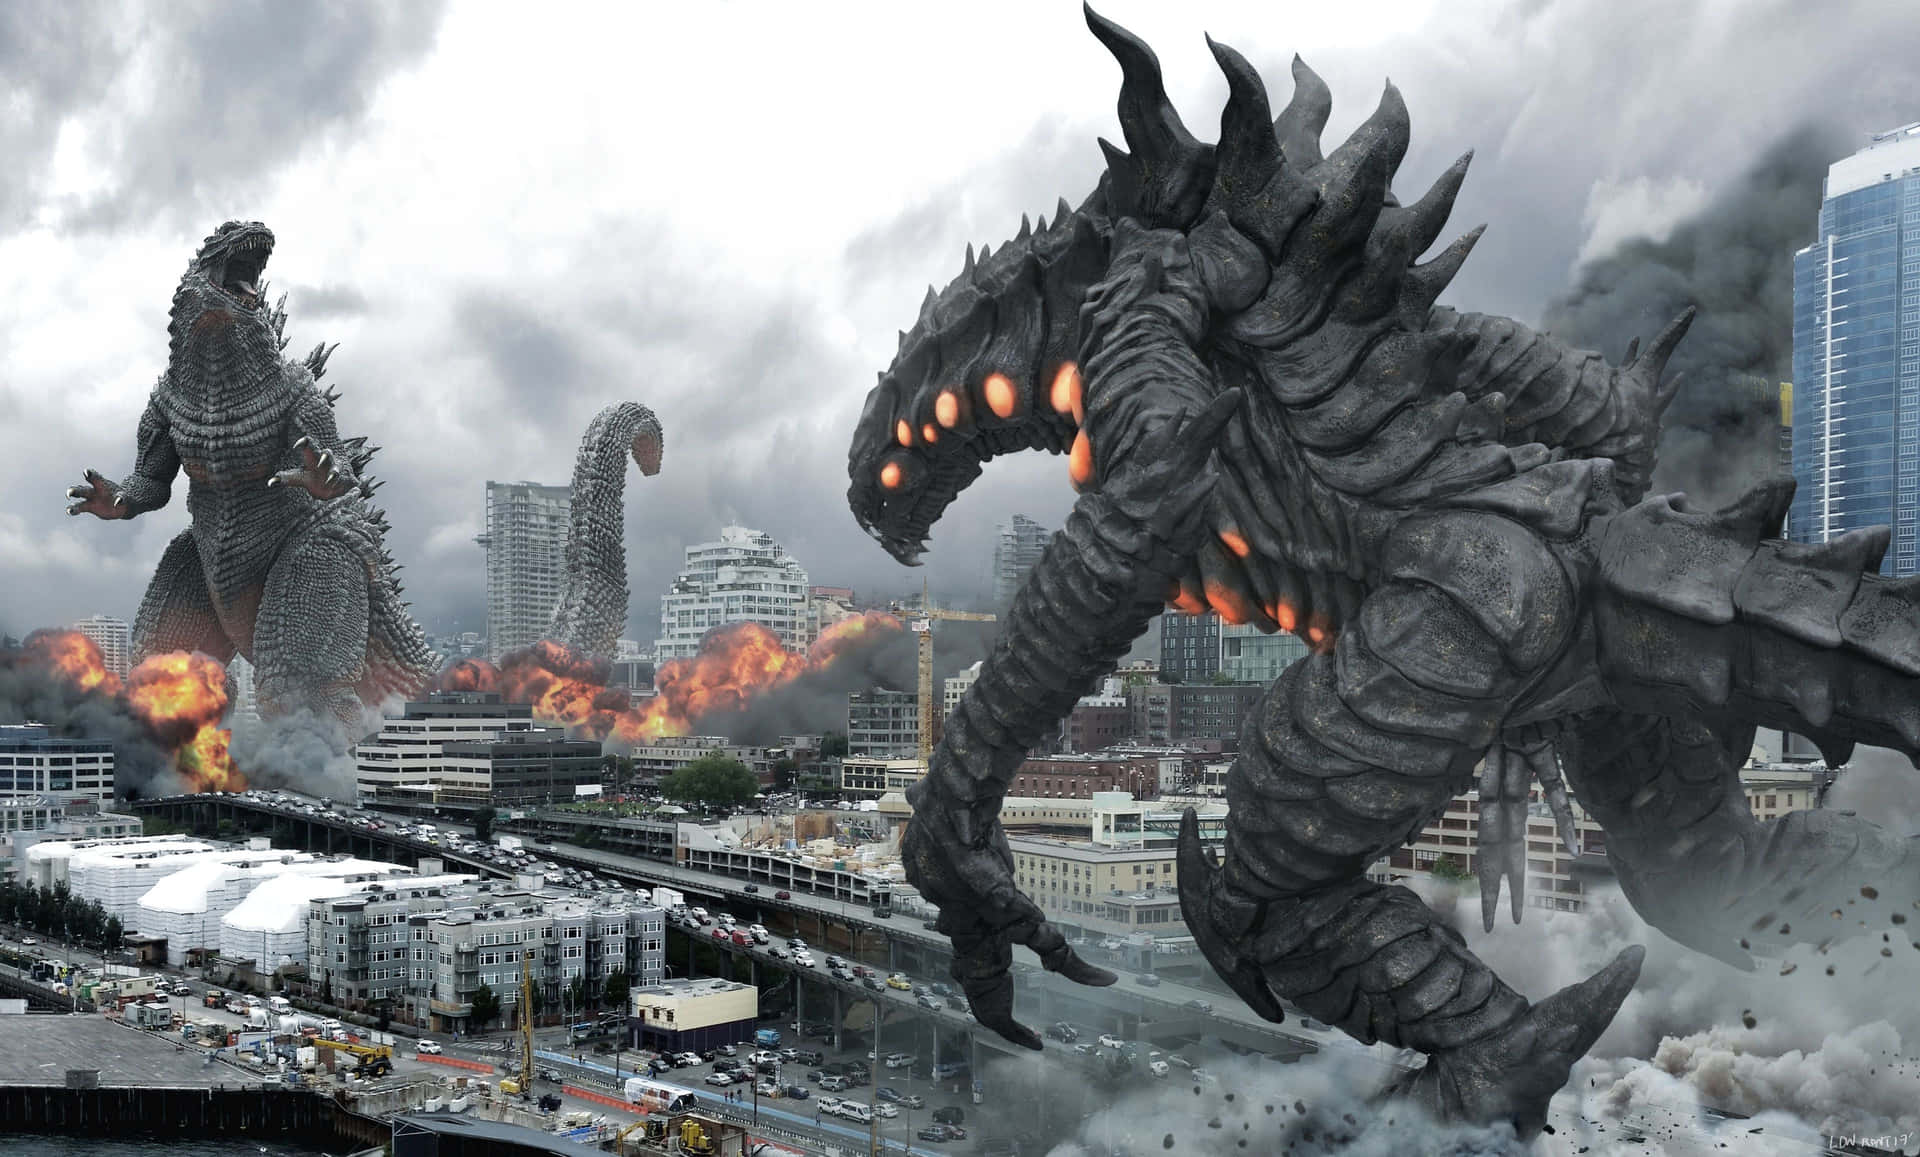 Cool Godzilla Fight Wallpaper